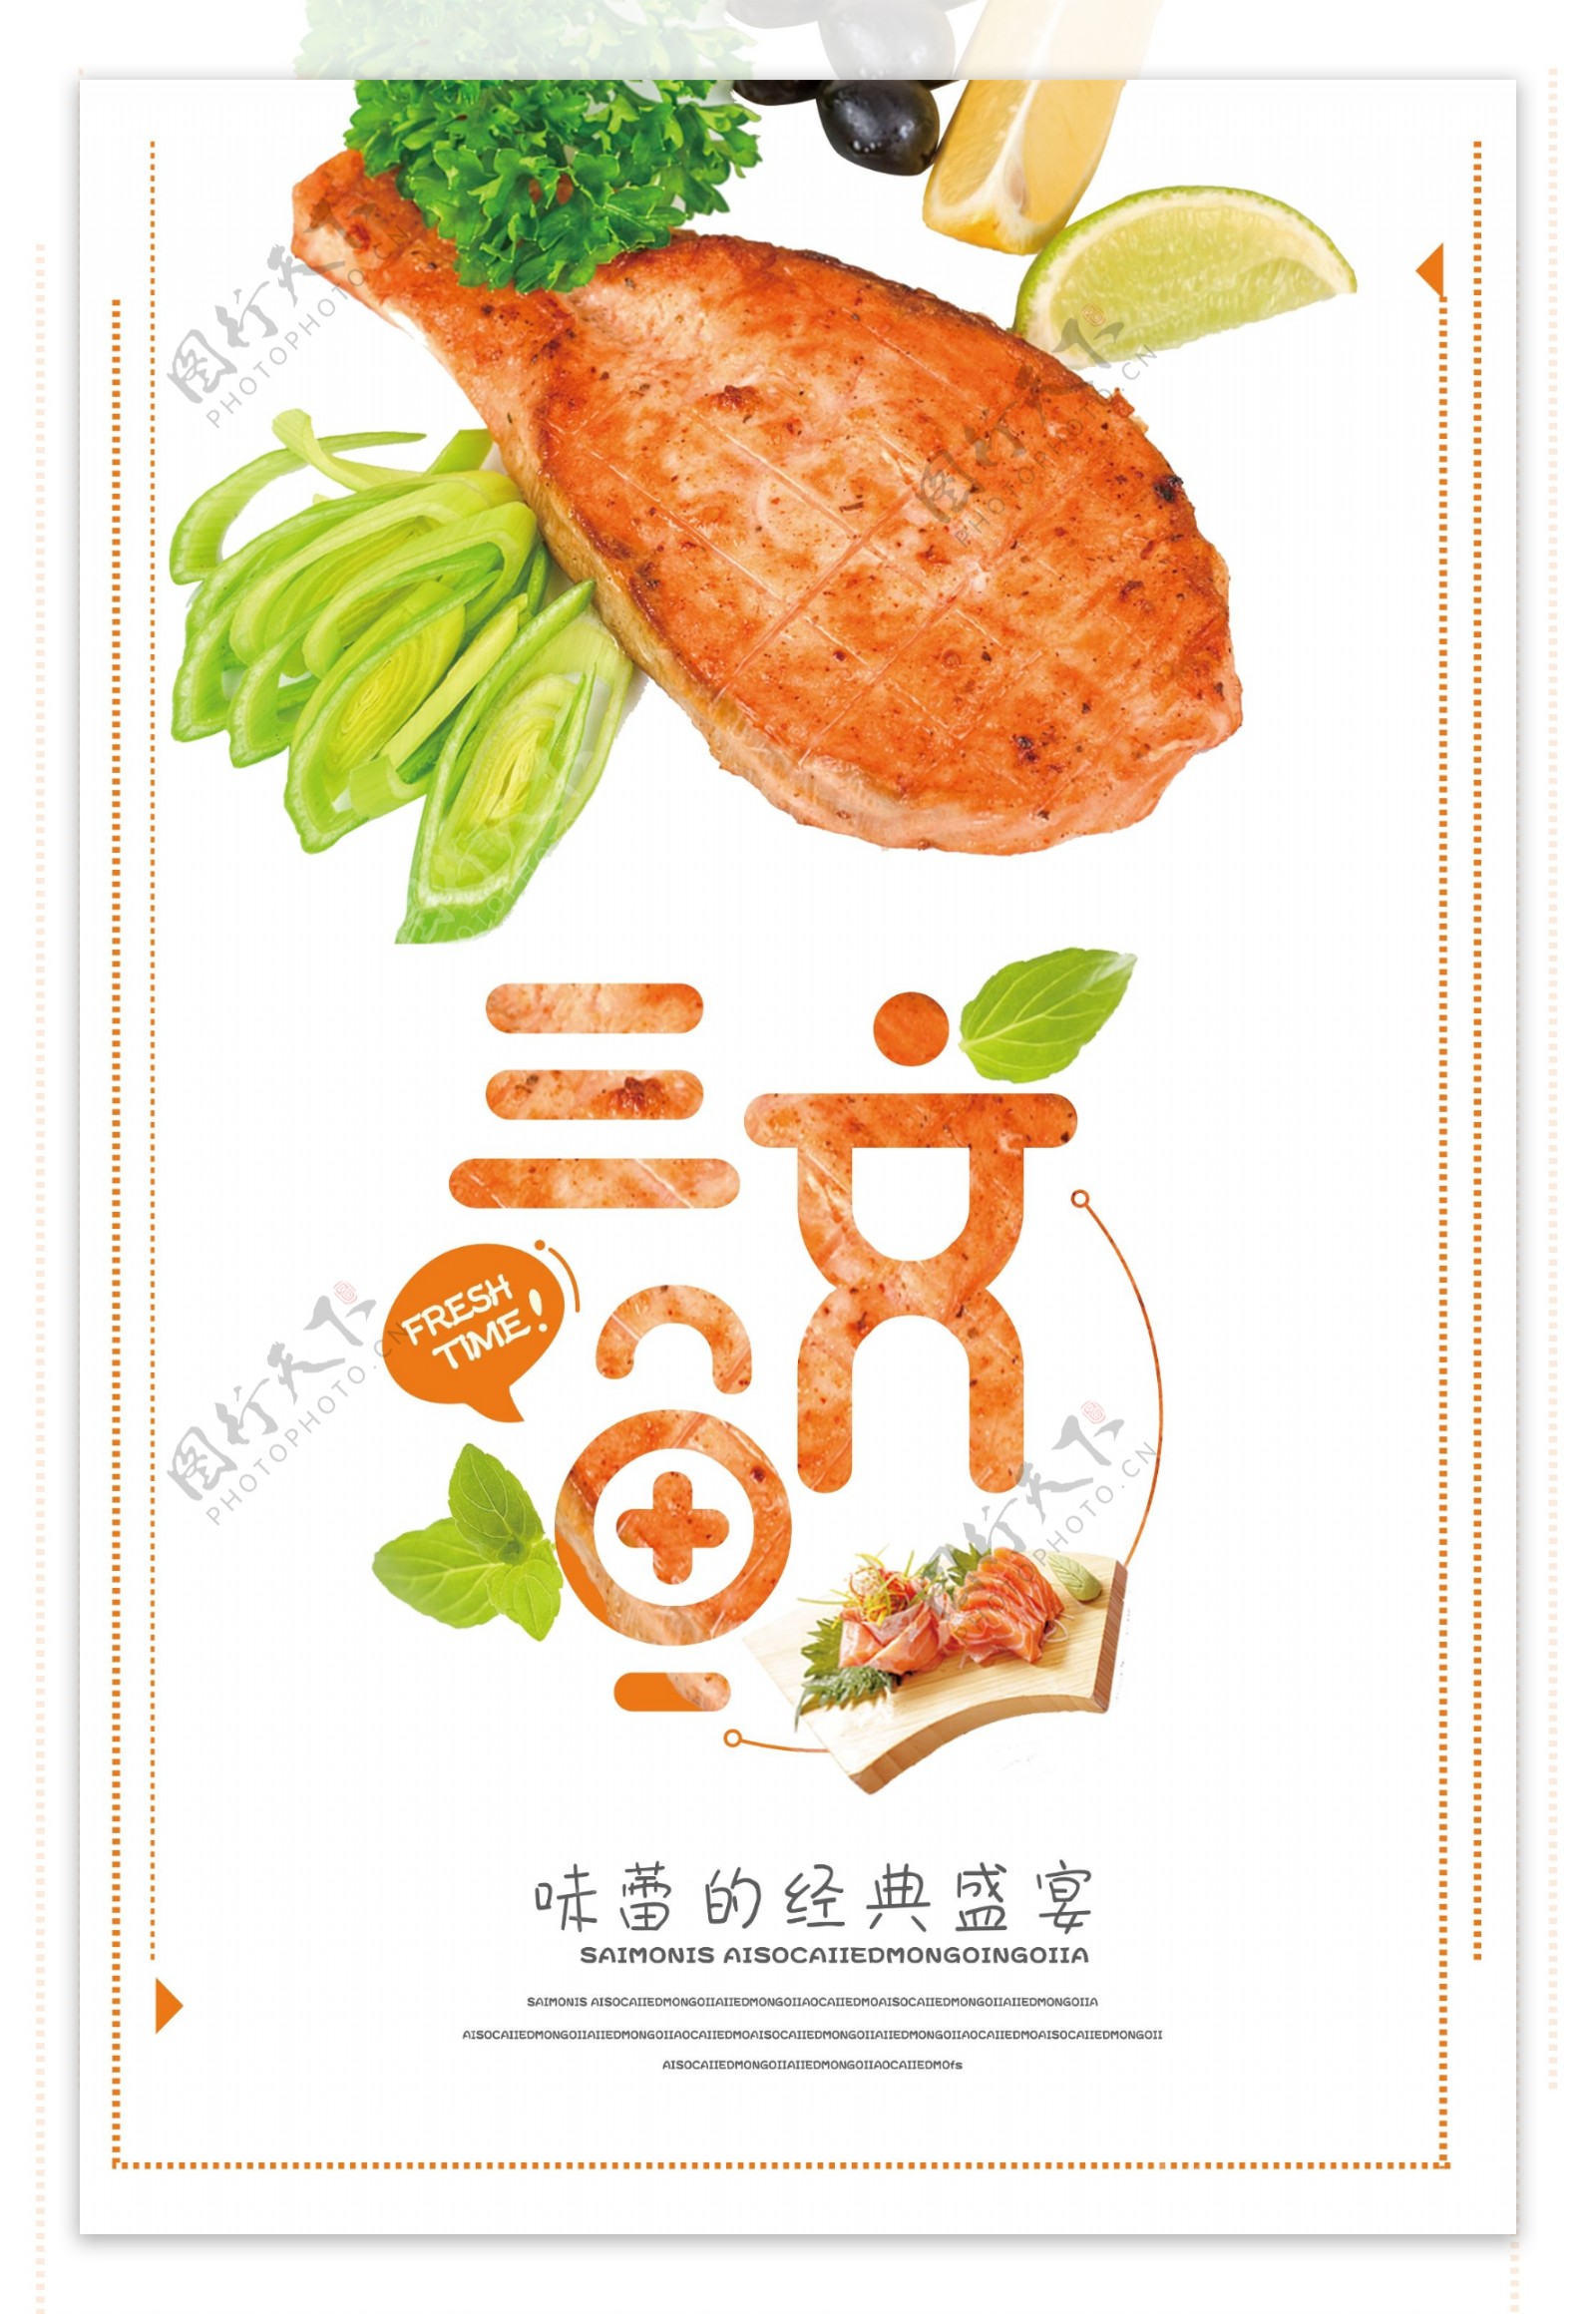 三文鱼味蕾的宣传盛宴宣传海报